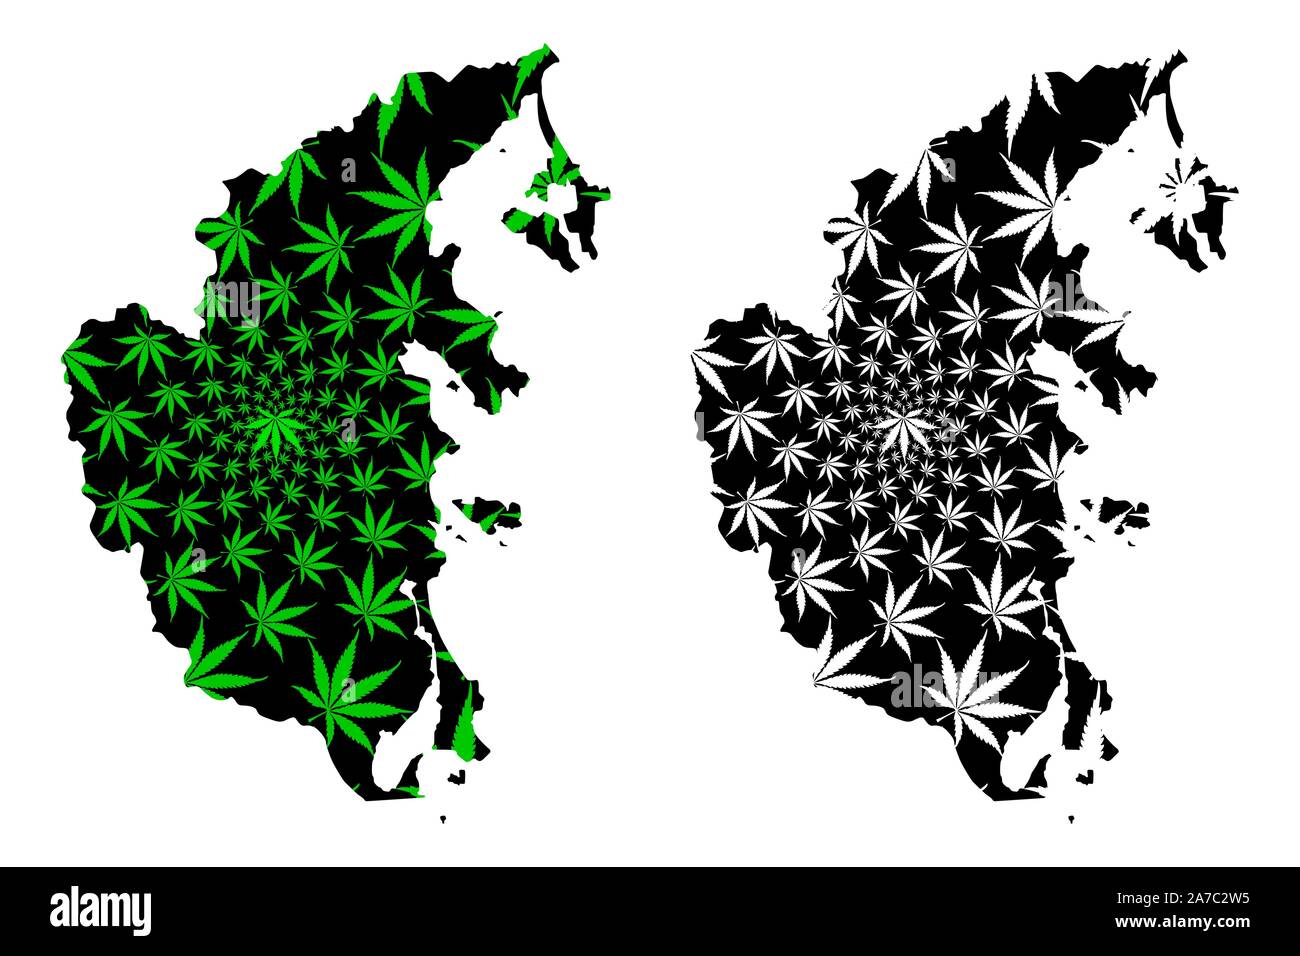 Khanh Hoa Provinz (Sozialistische Republik Vietnam, Unterteilungen von Vietnam) Karte cannabis Blatt grün und schwarz ausgelegt ist, Tinh Khanh Hoa Karte von gemacht Stock Vektor